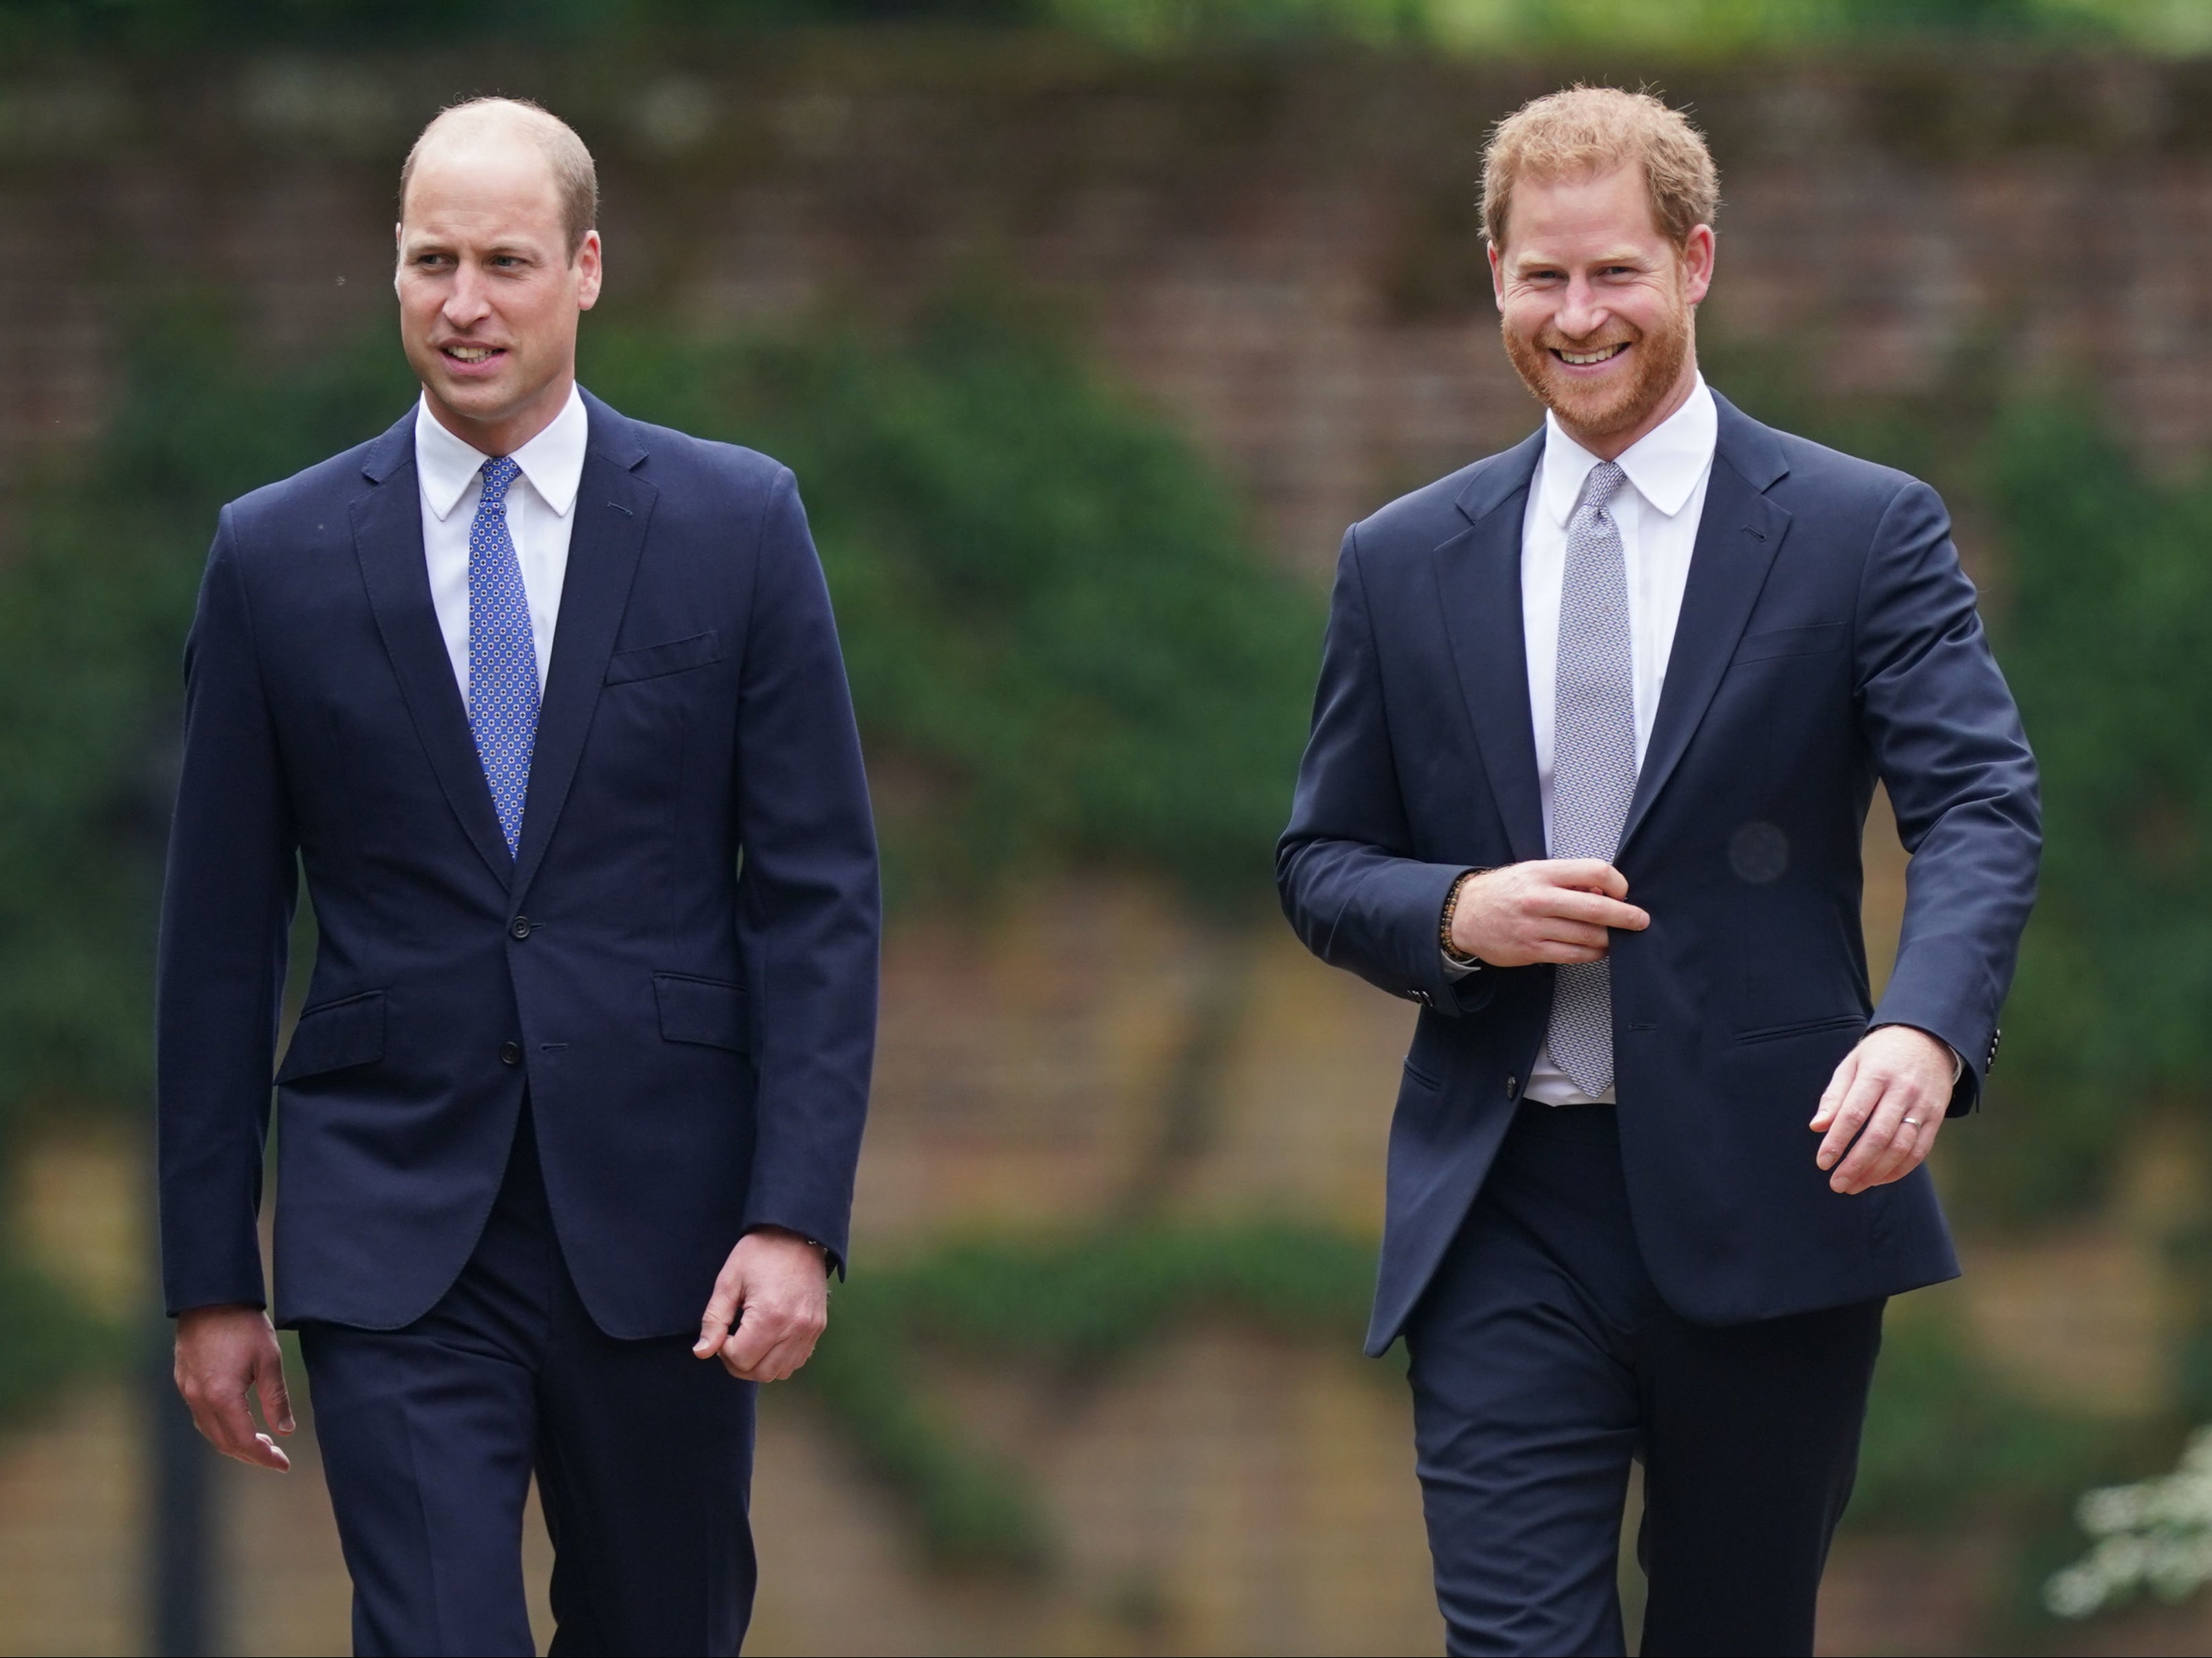 Según una fuente, durante el fallecimiento de la reina, William ignoró a Harry por completo